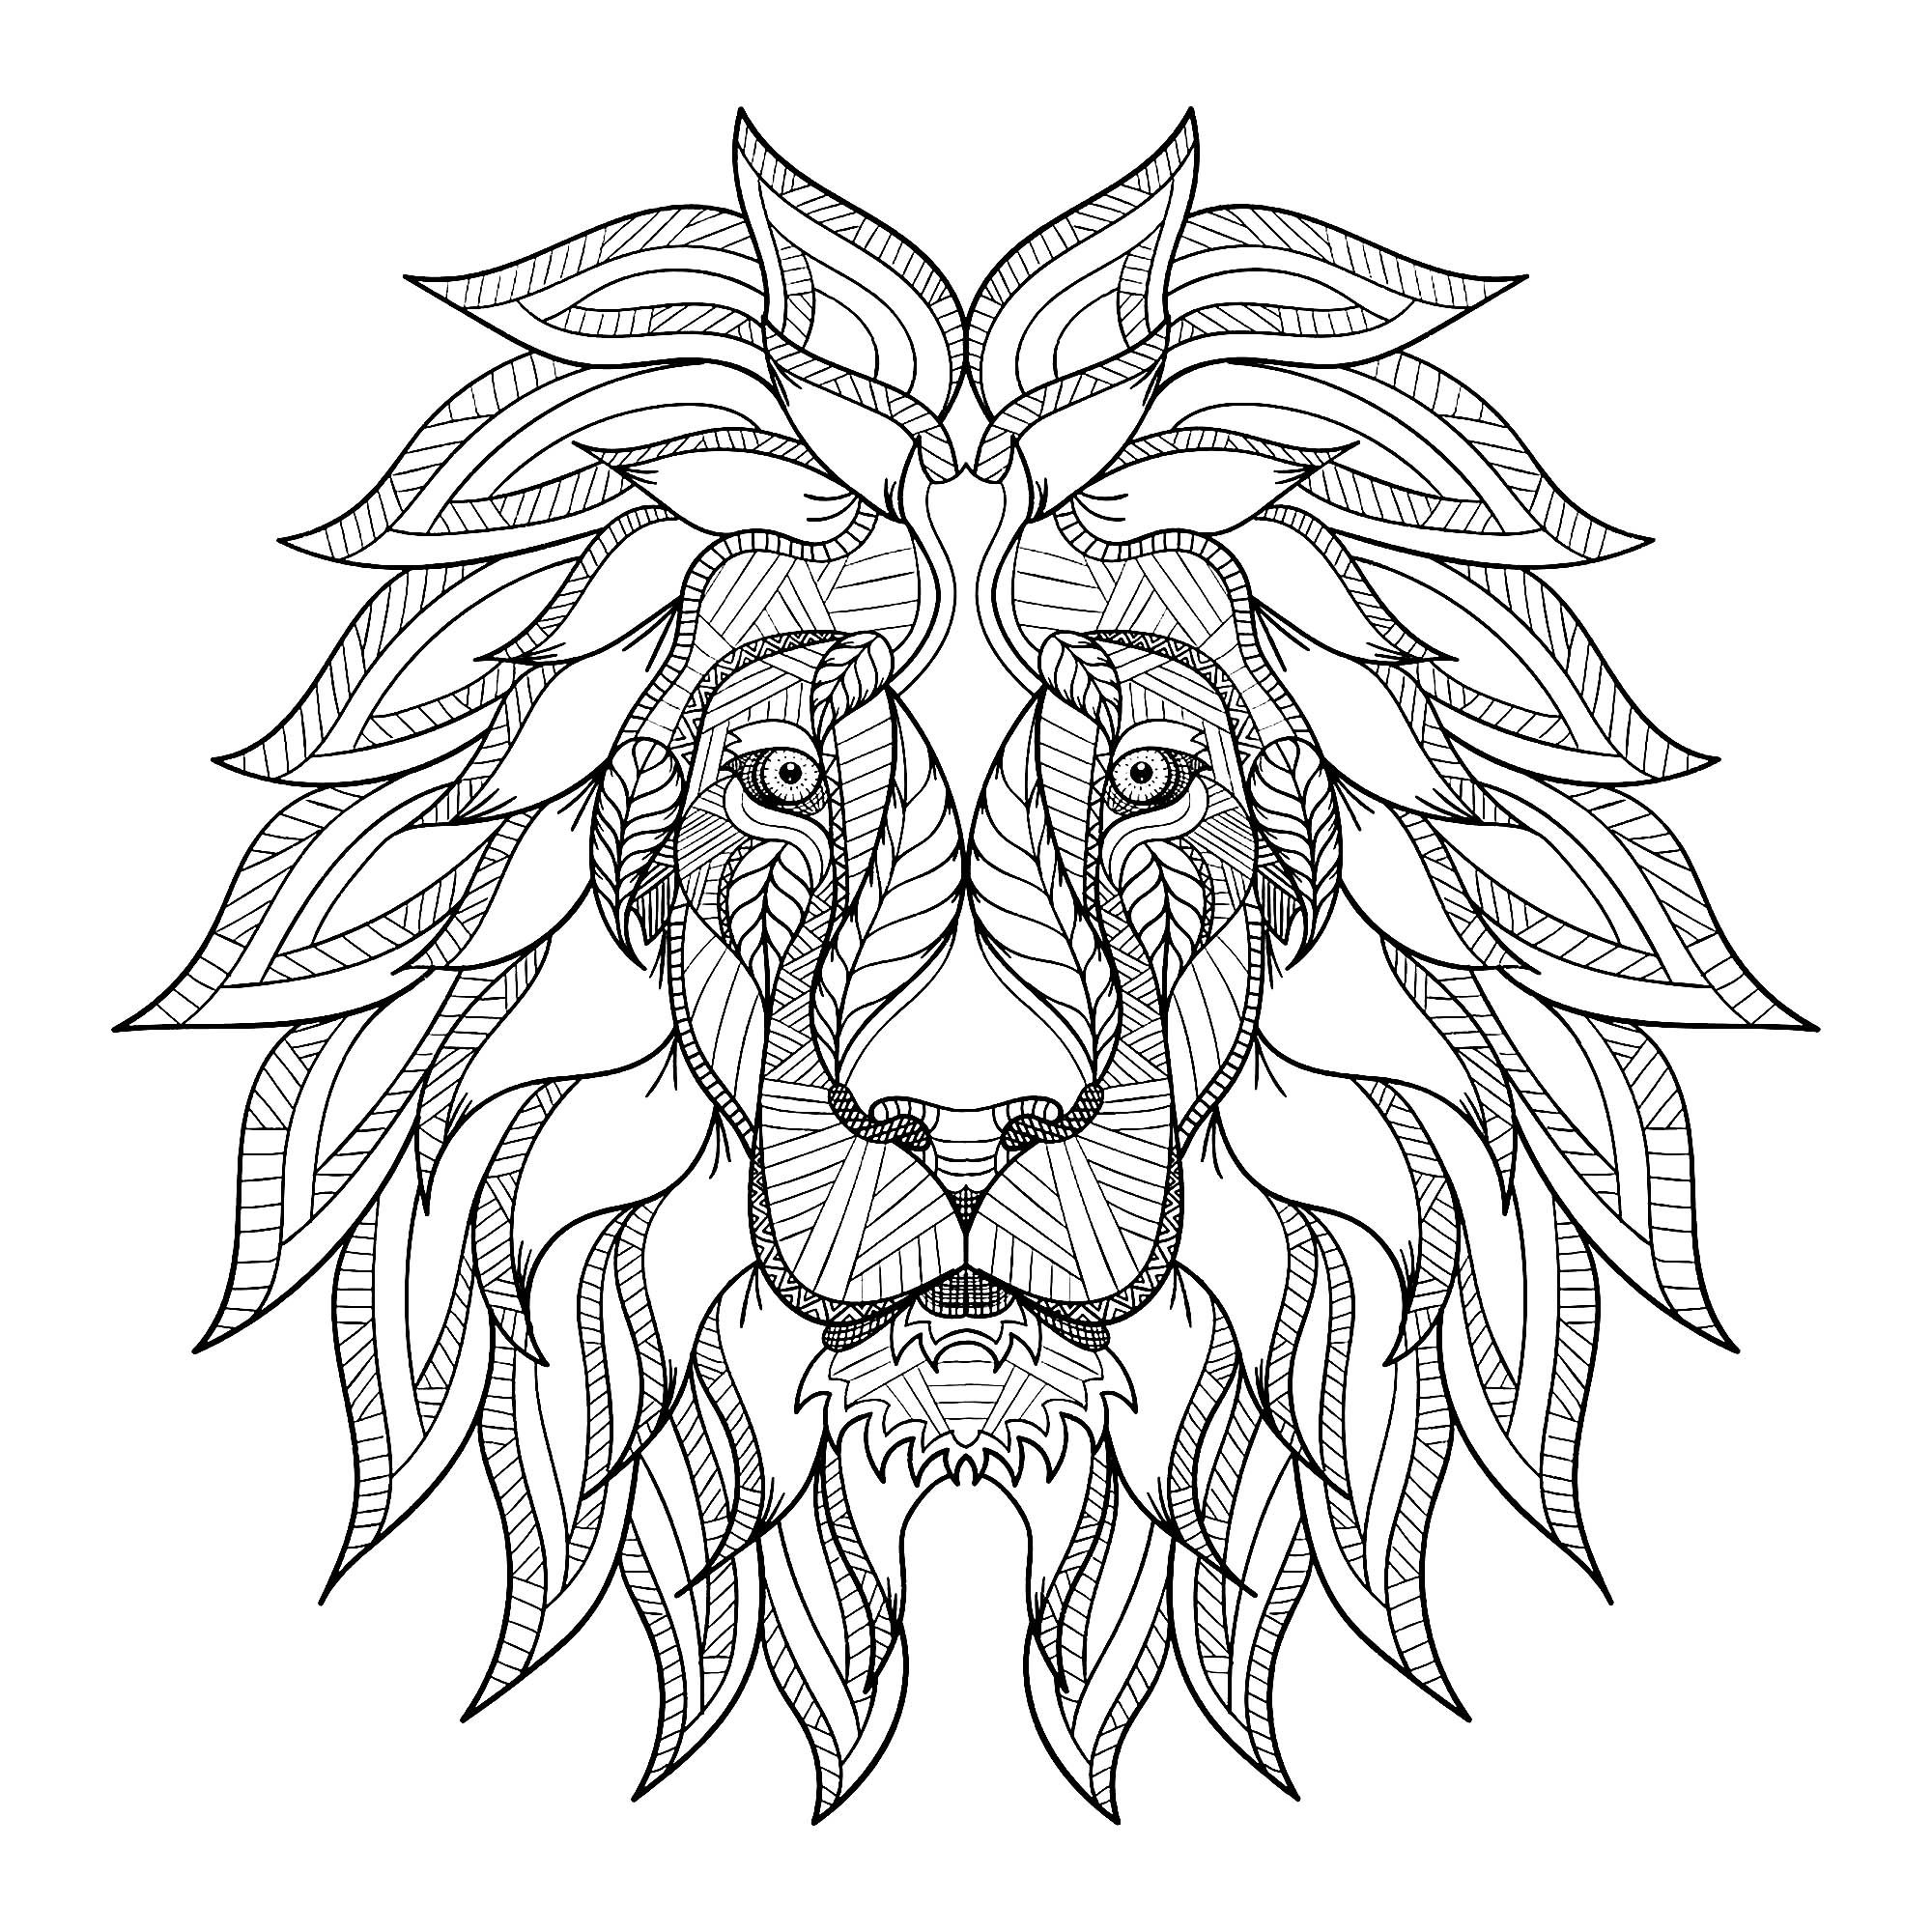 Tête de lion et jolie crinière, Artiste : Roman Poljak   Source : 123rf